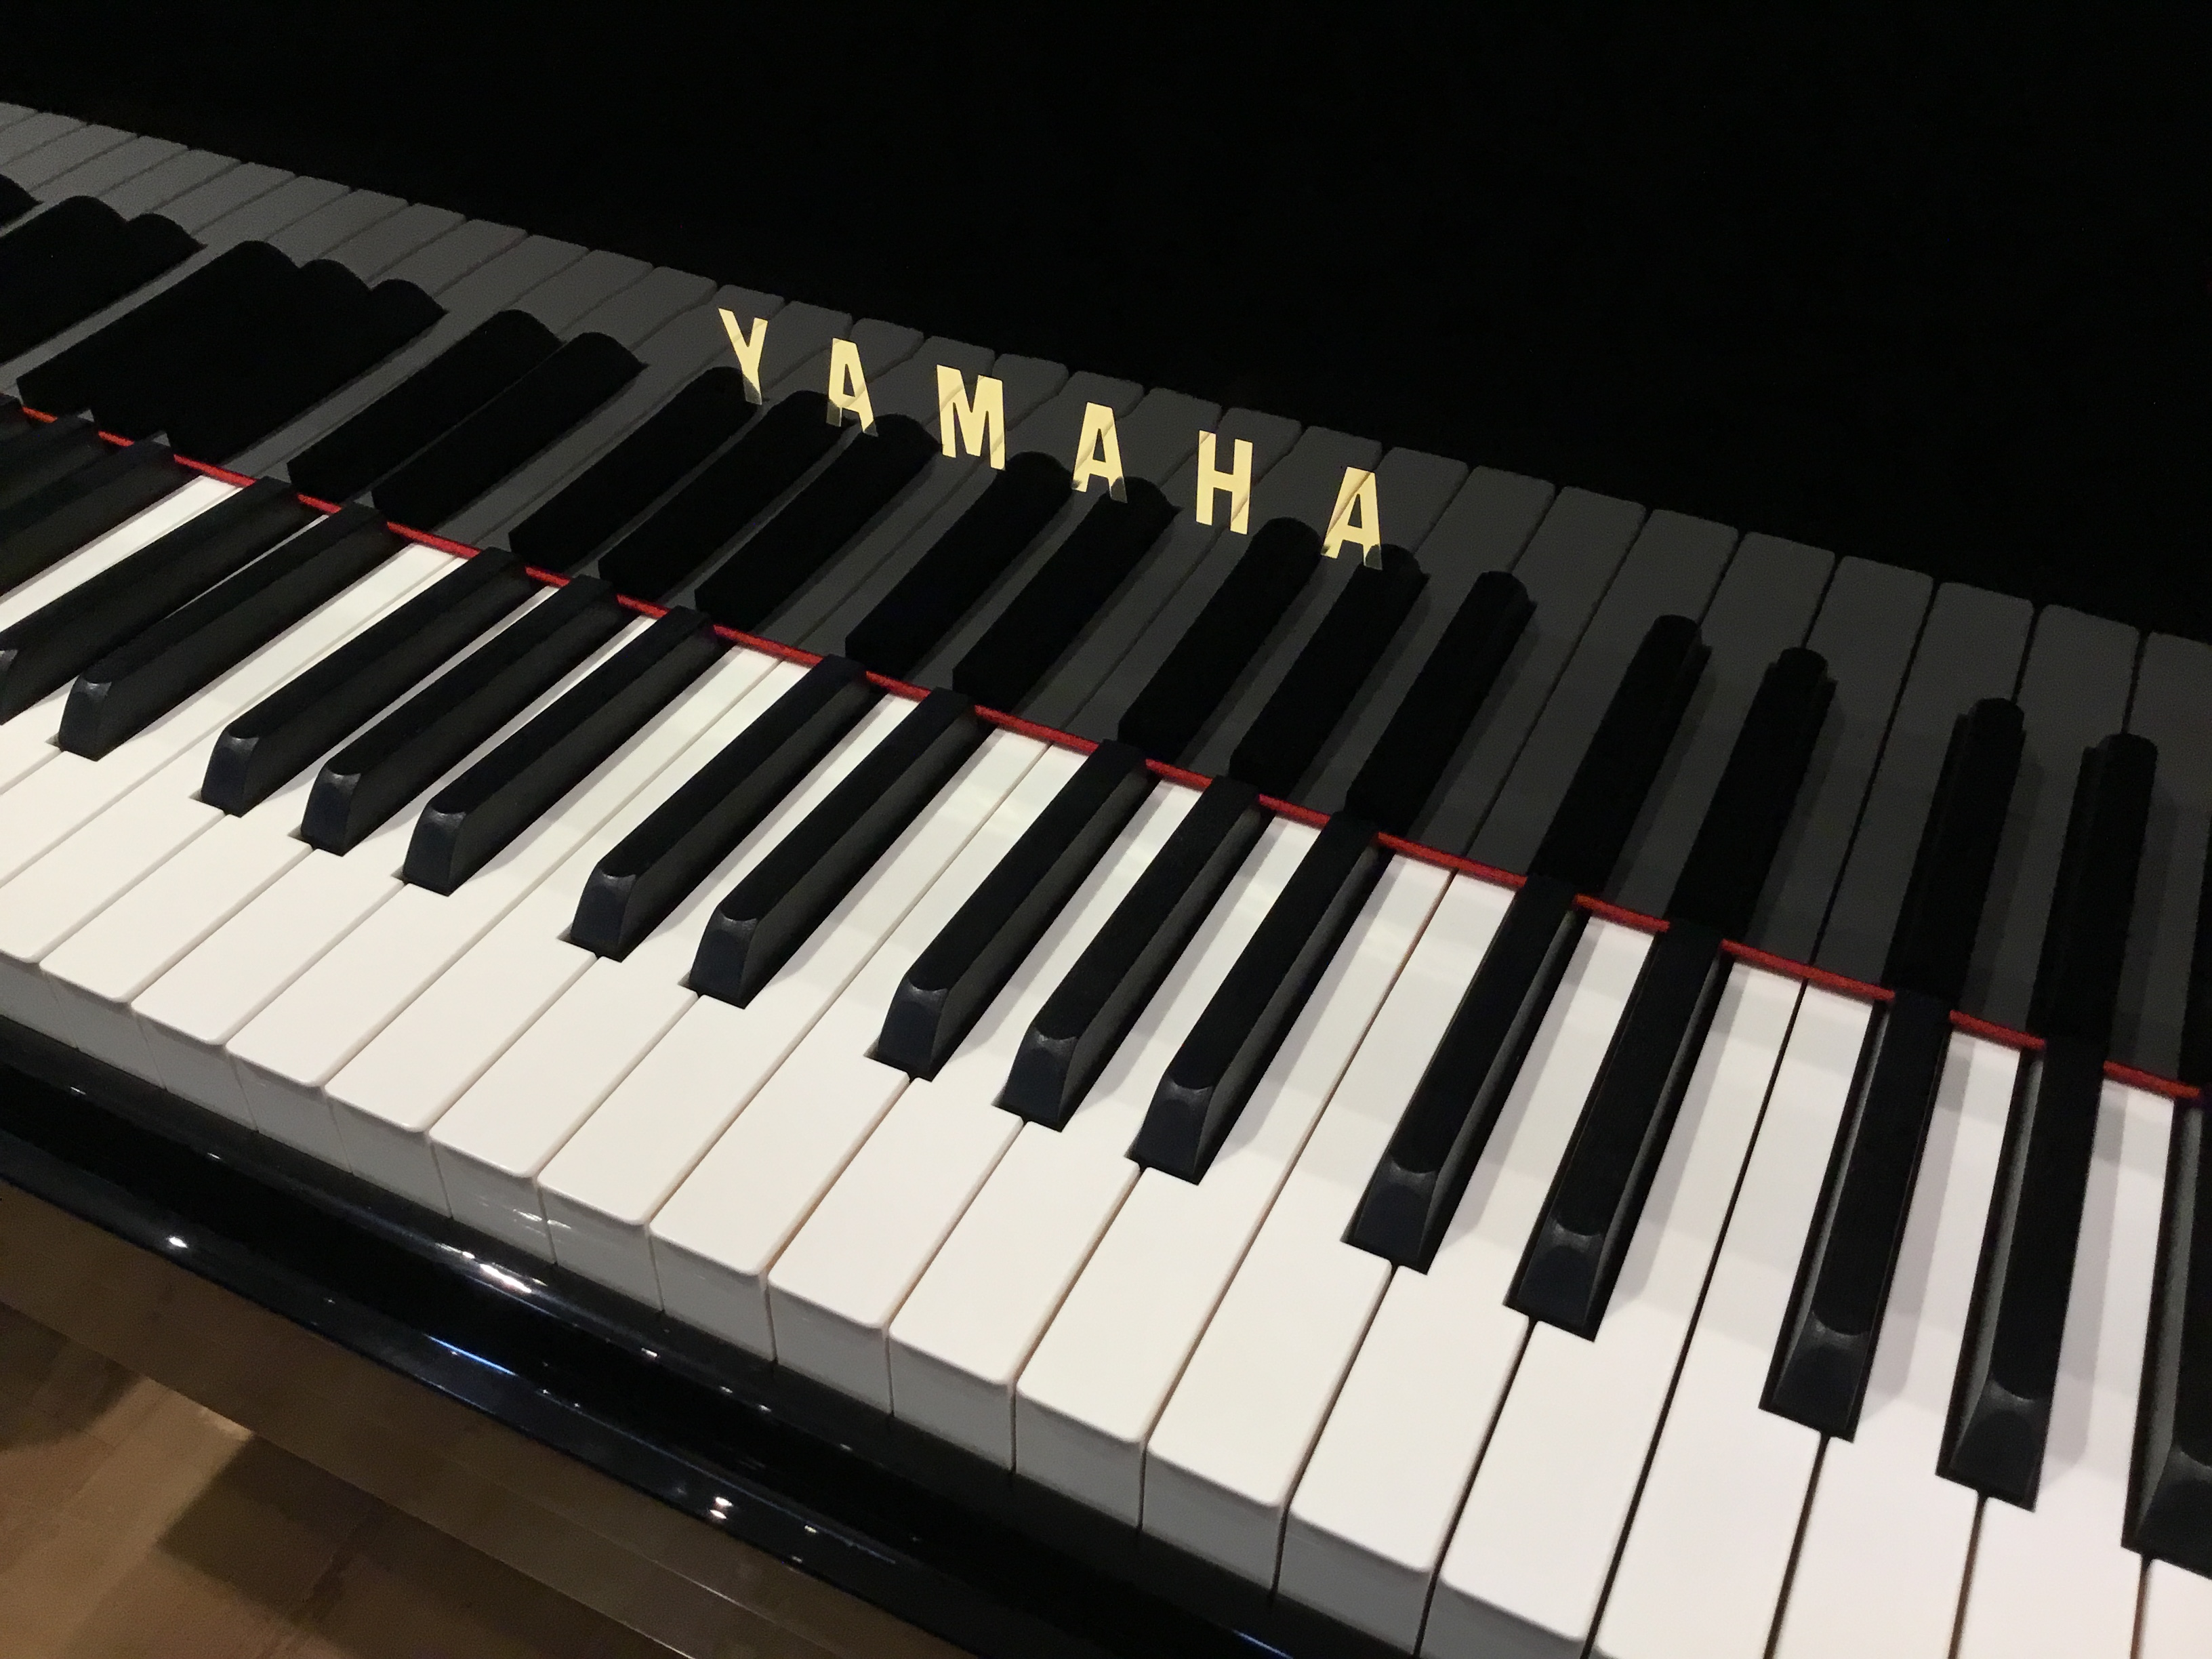 ヤマハ純正サイレント付き。ヘッドホンでも練習できるグランドピアノです。